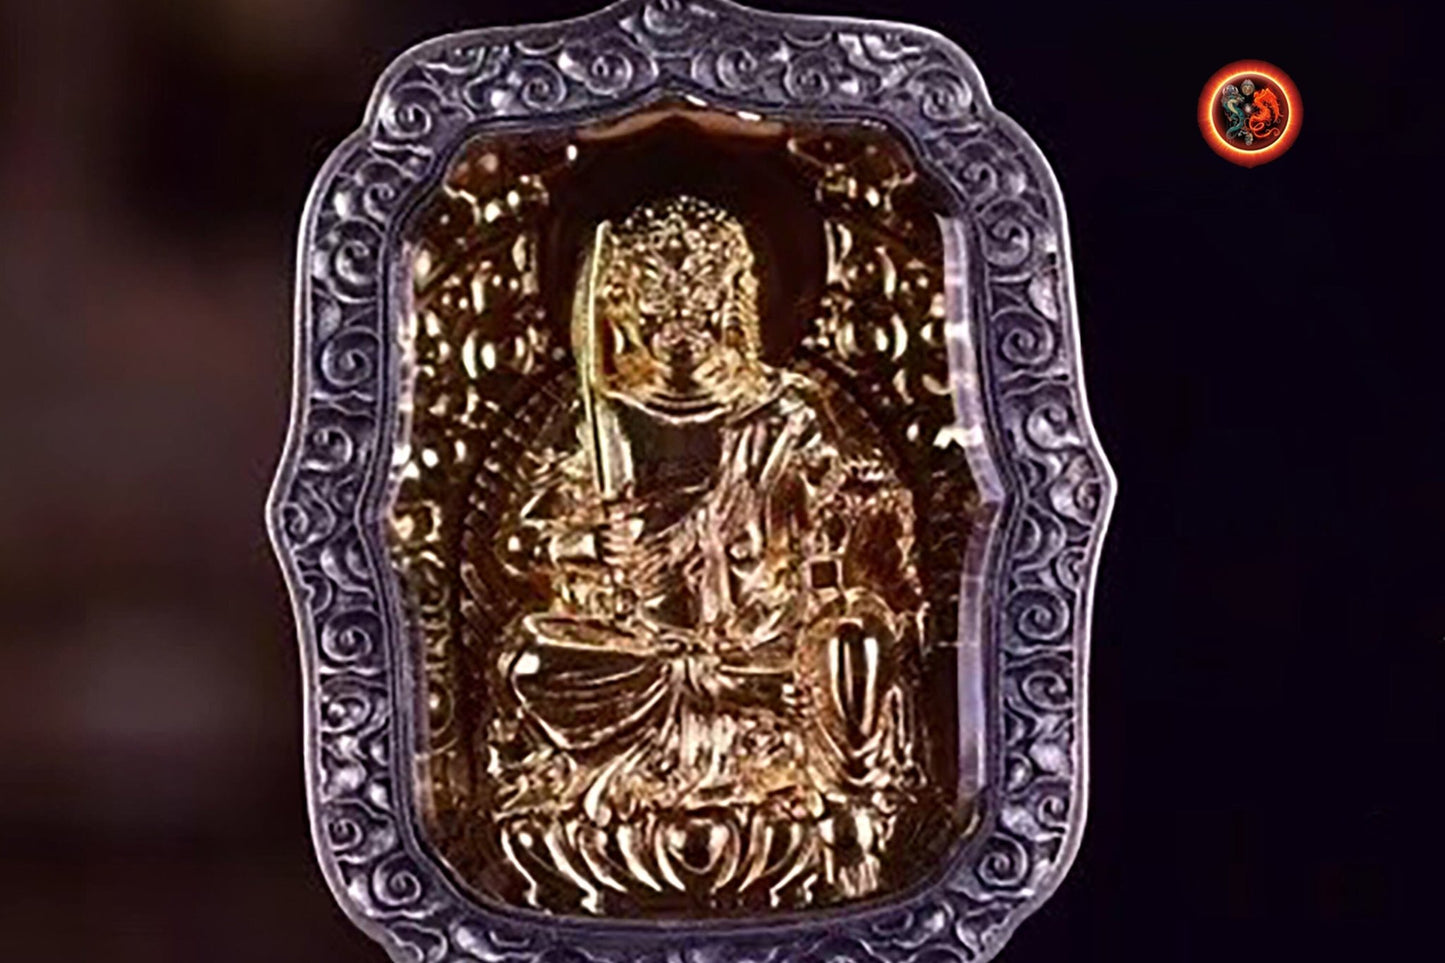 pendentif amulette de protection bouddhiste Bouddha Acala mala de prière et méditation 108 perles, argent 925 or 18K bélière Garuda - obsidian dragon